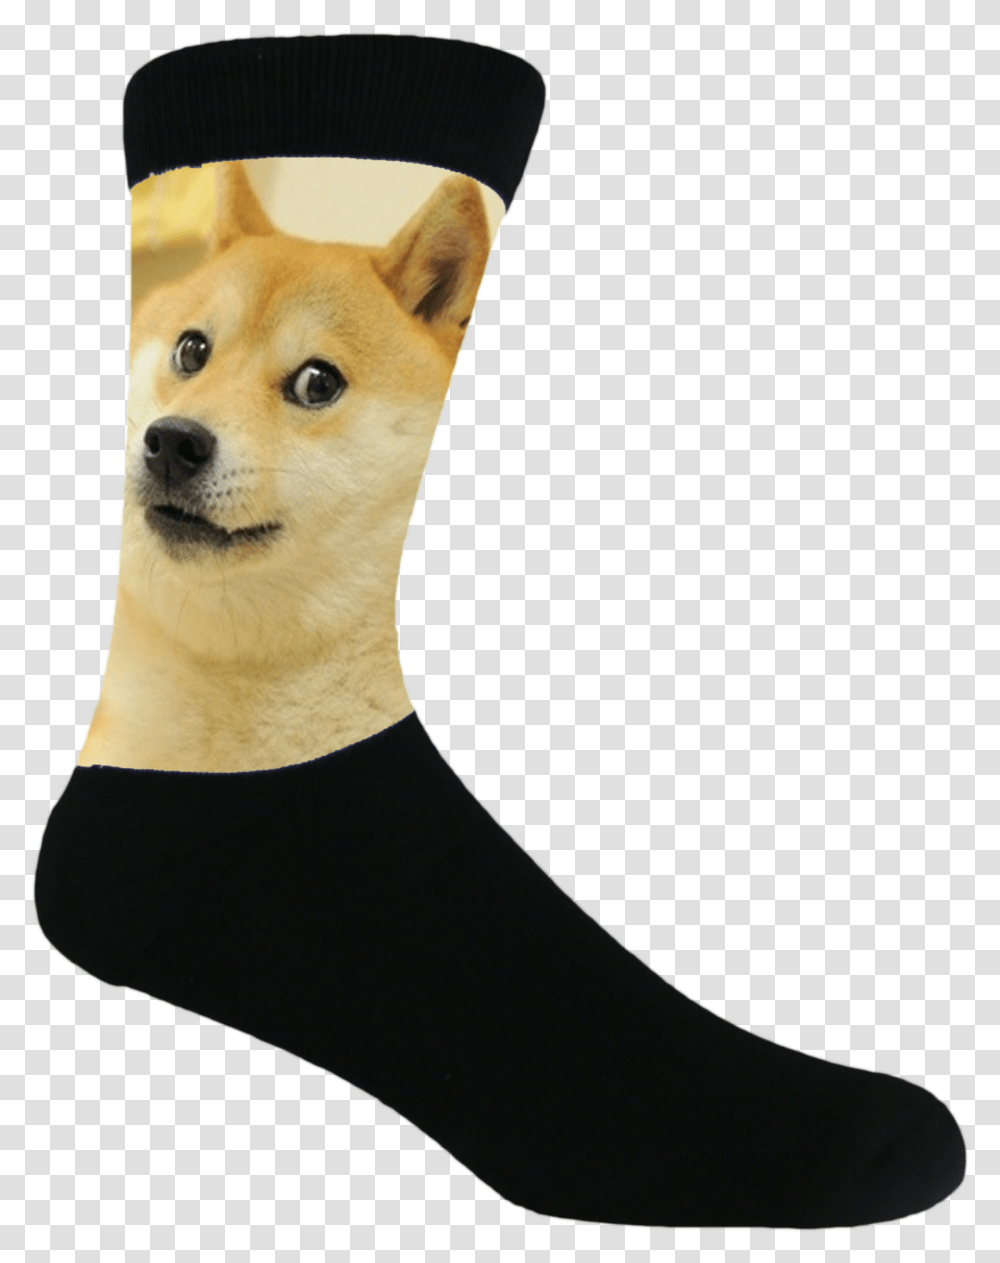 Doge Doge Line Full Size Download Seekpng Sock, Clothing, Apparel, Pet, Animal Transparent Png